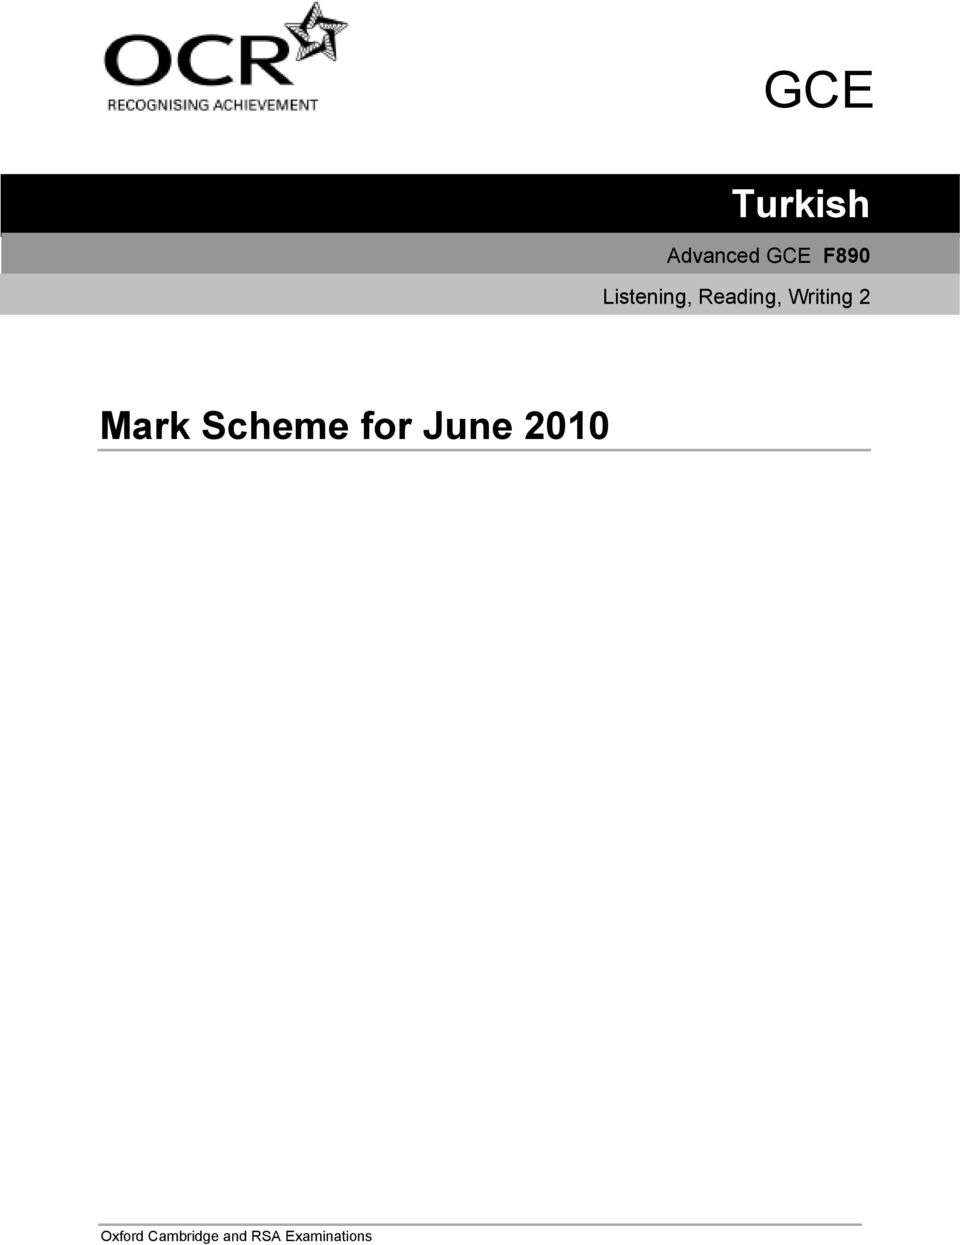 Mark Scheme for June 2010